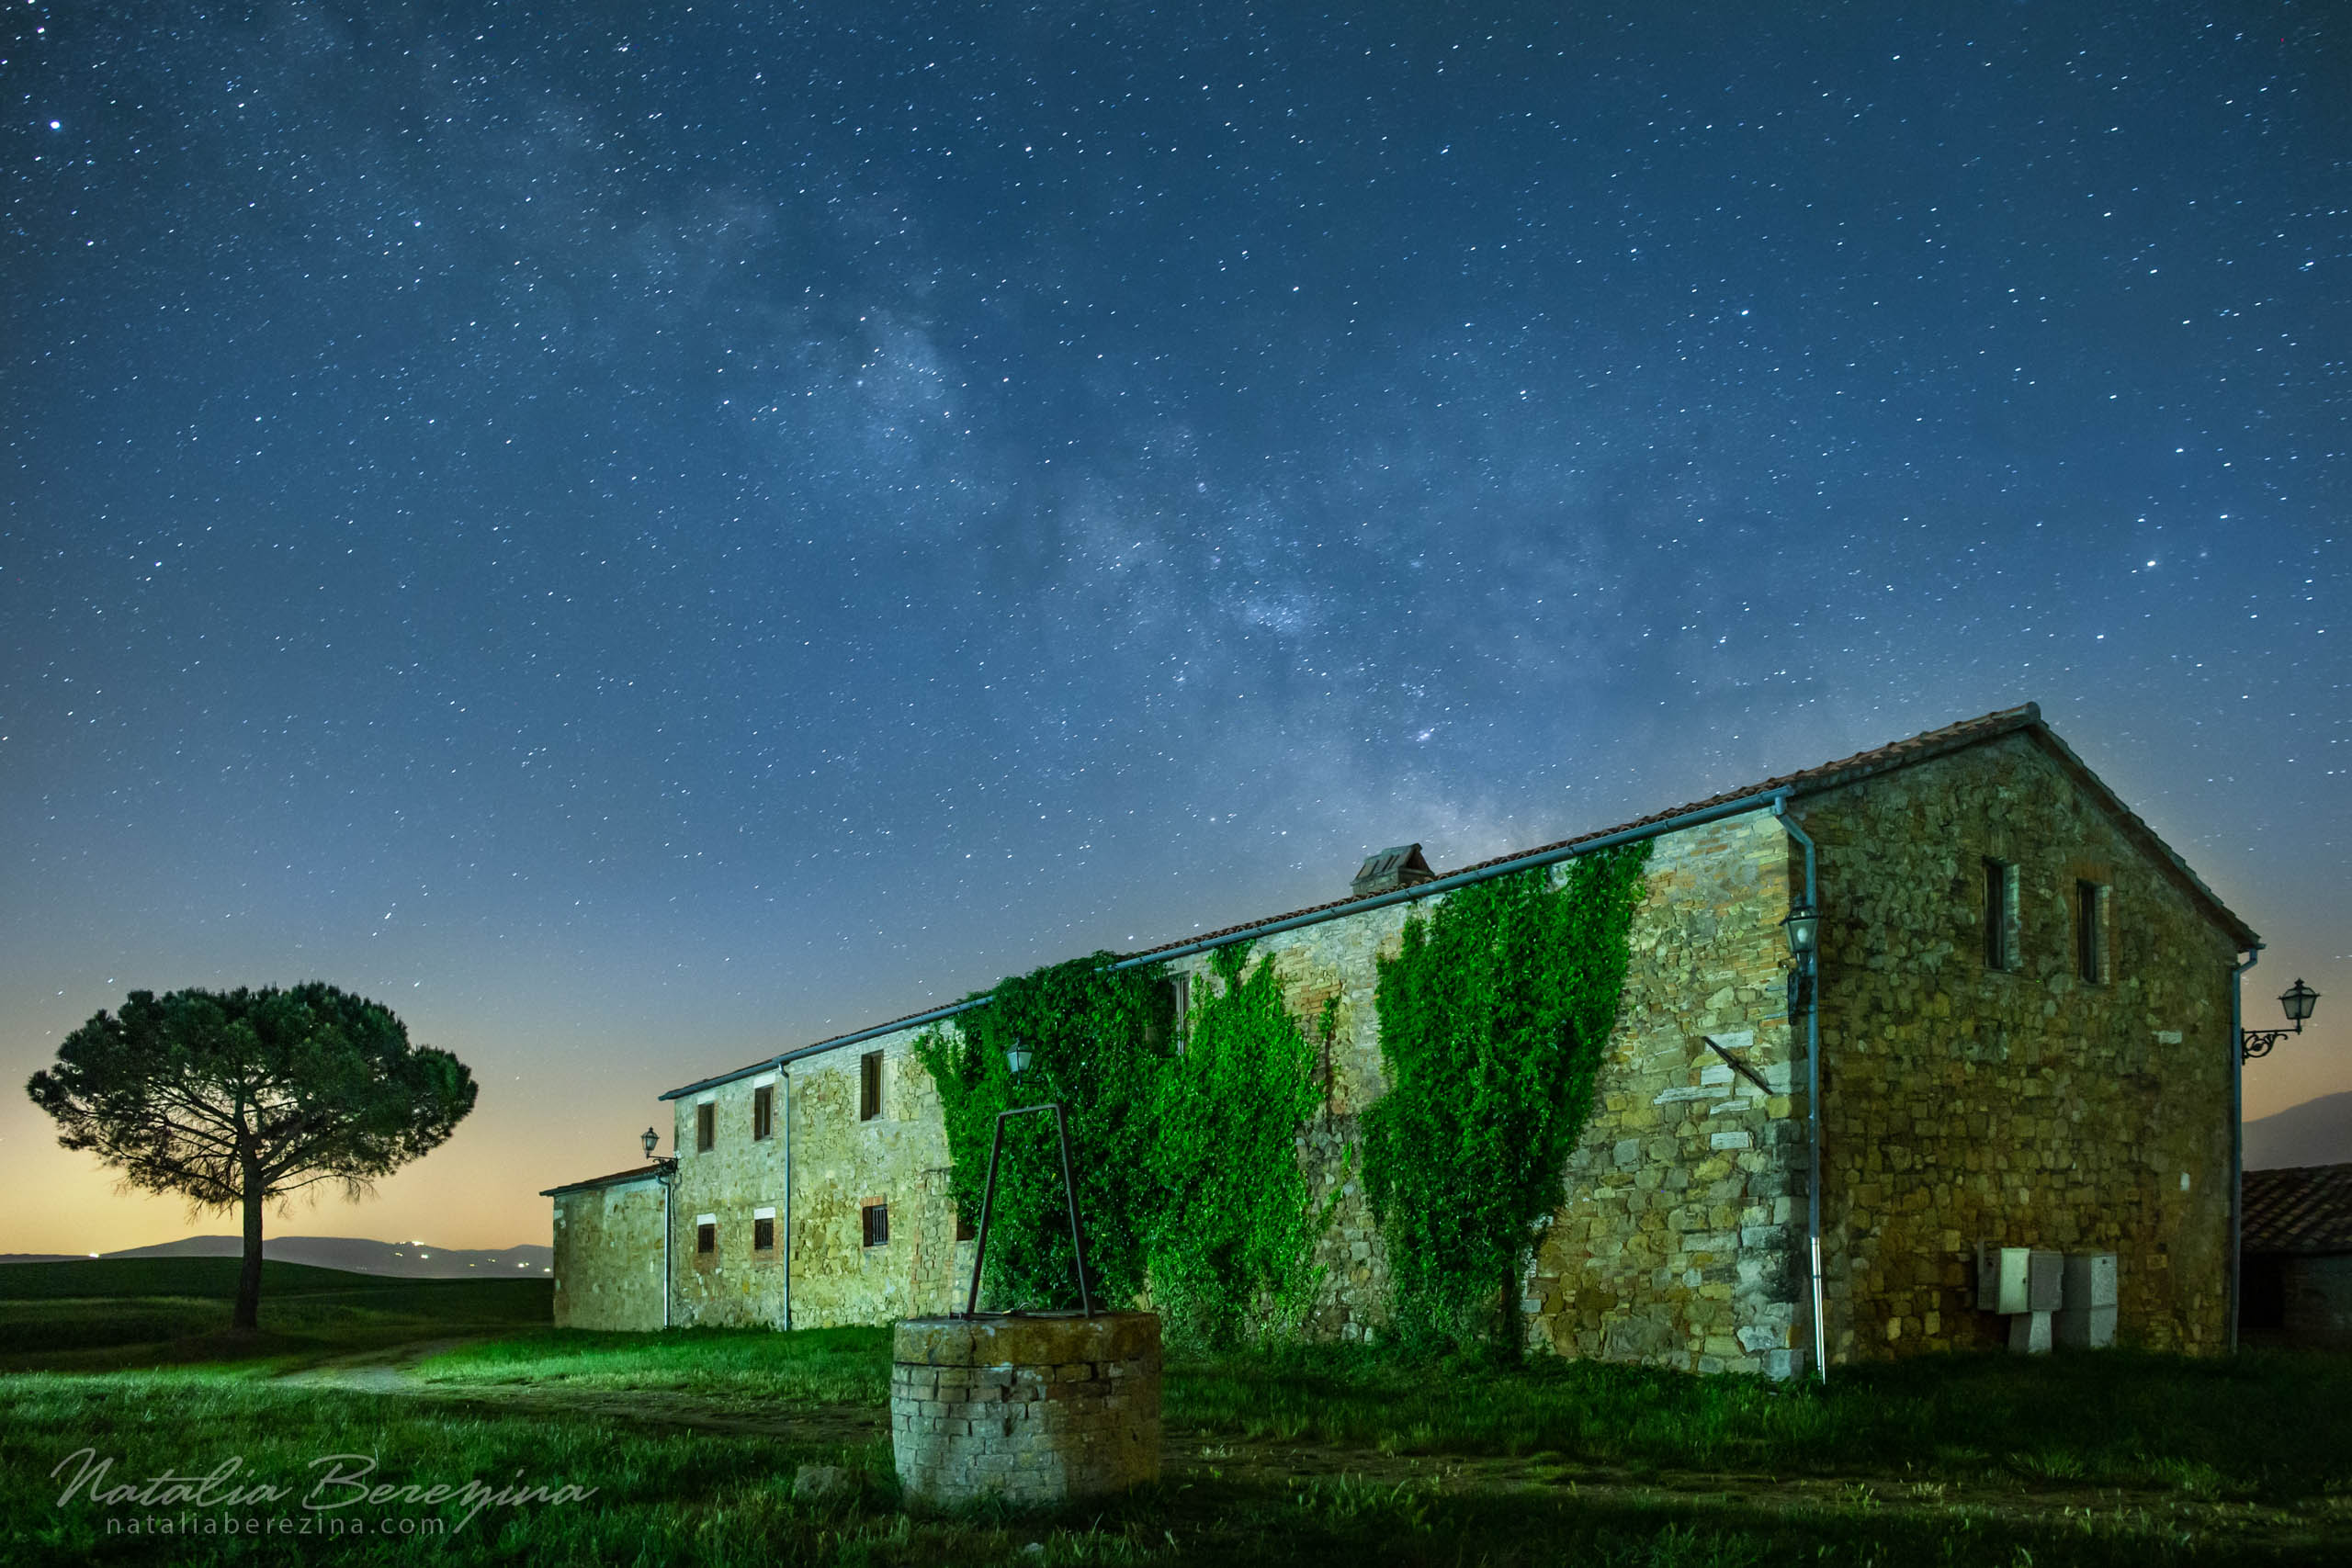 Tuscany, Italy, cityscape, star, night time, Milky way, tree TU1-NBDK1U2050 - Tuscany, Italy - Natalia Berezina Photography